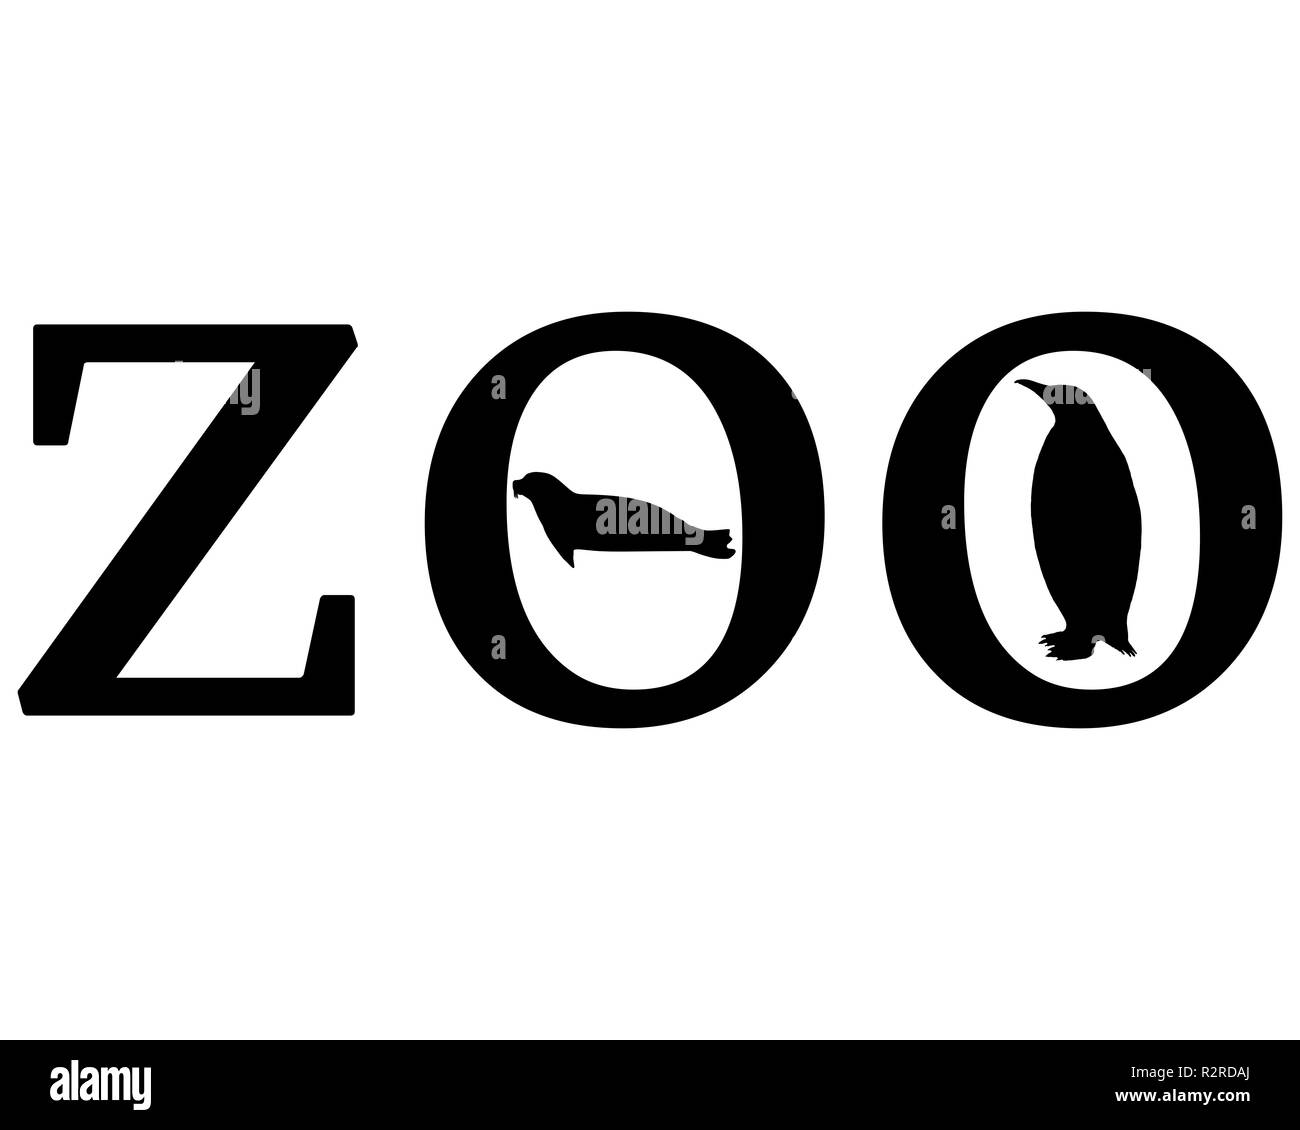 zoo animals Stock Photo